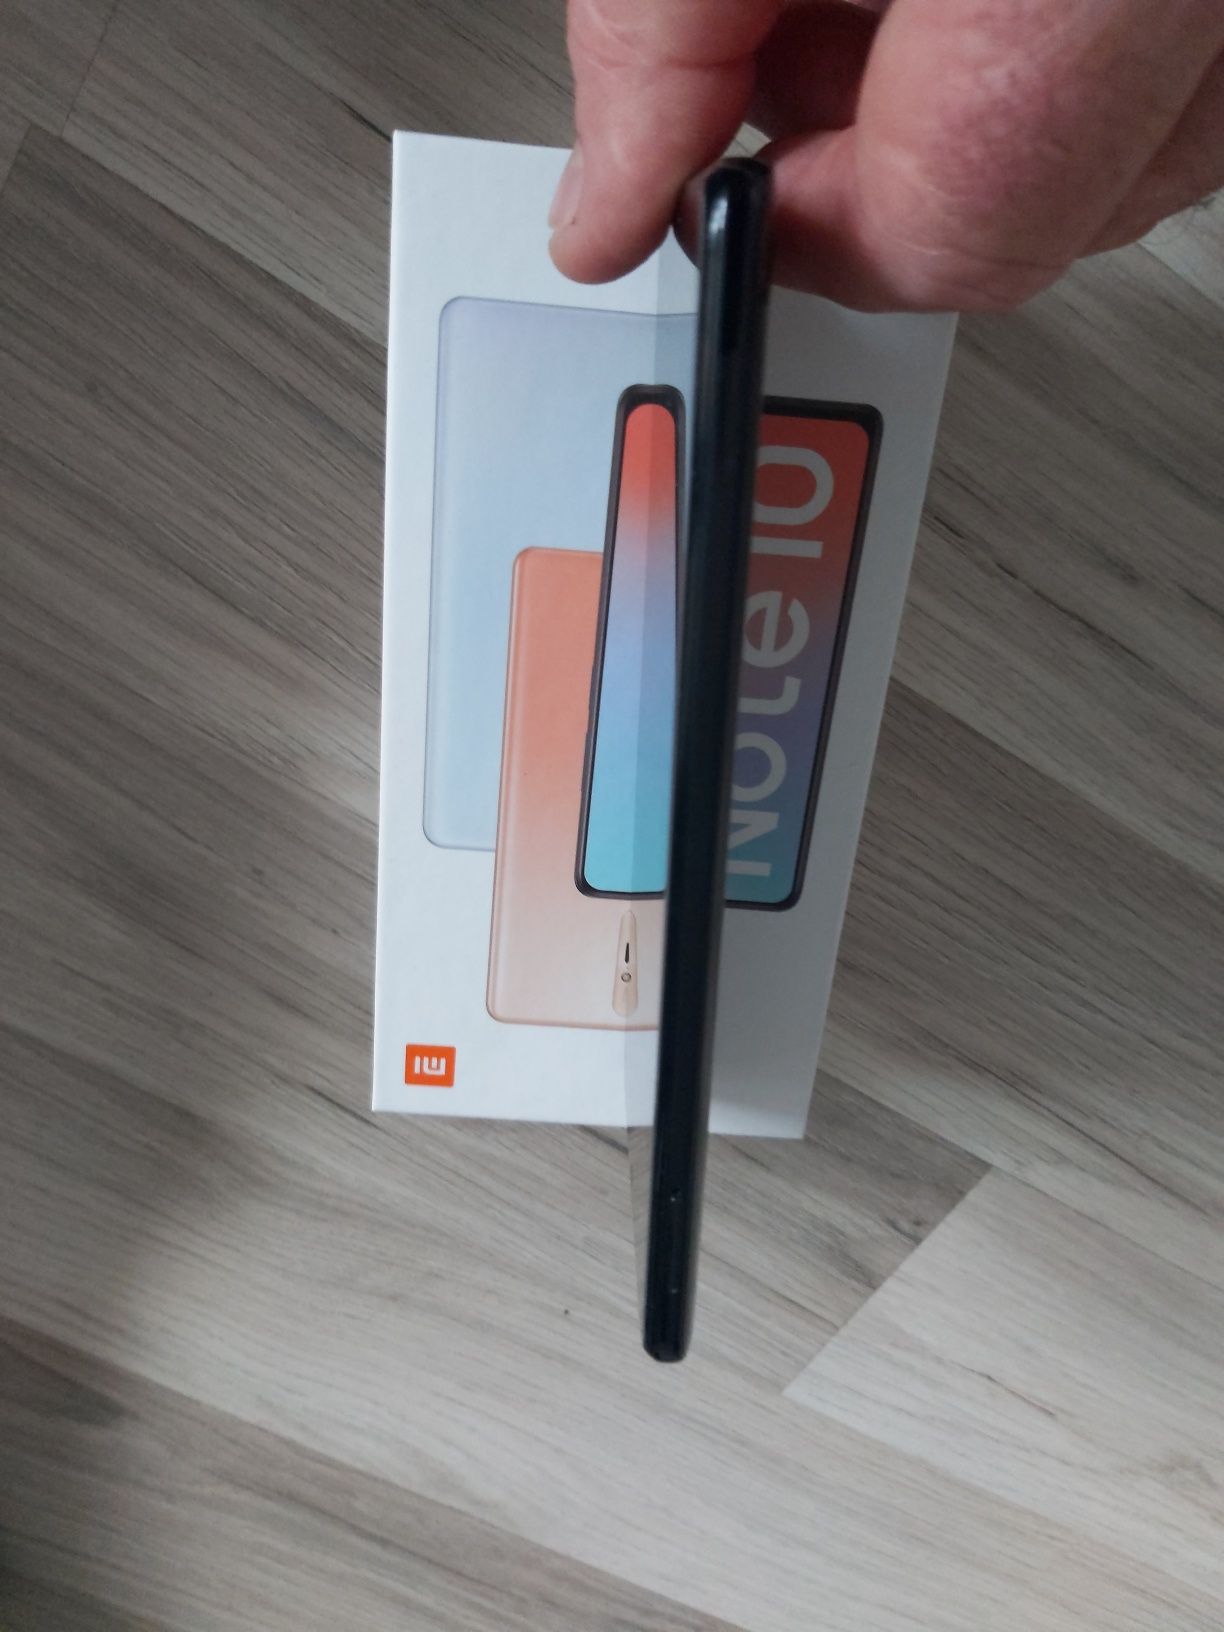 Vând Xiaomi Redmi Note 10 Pro